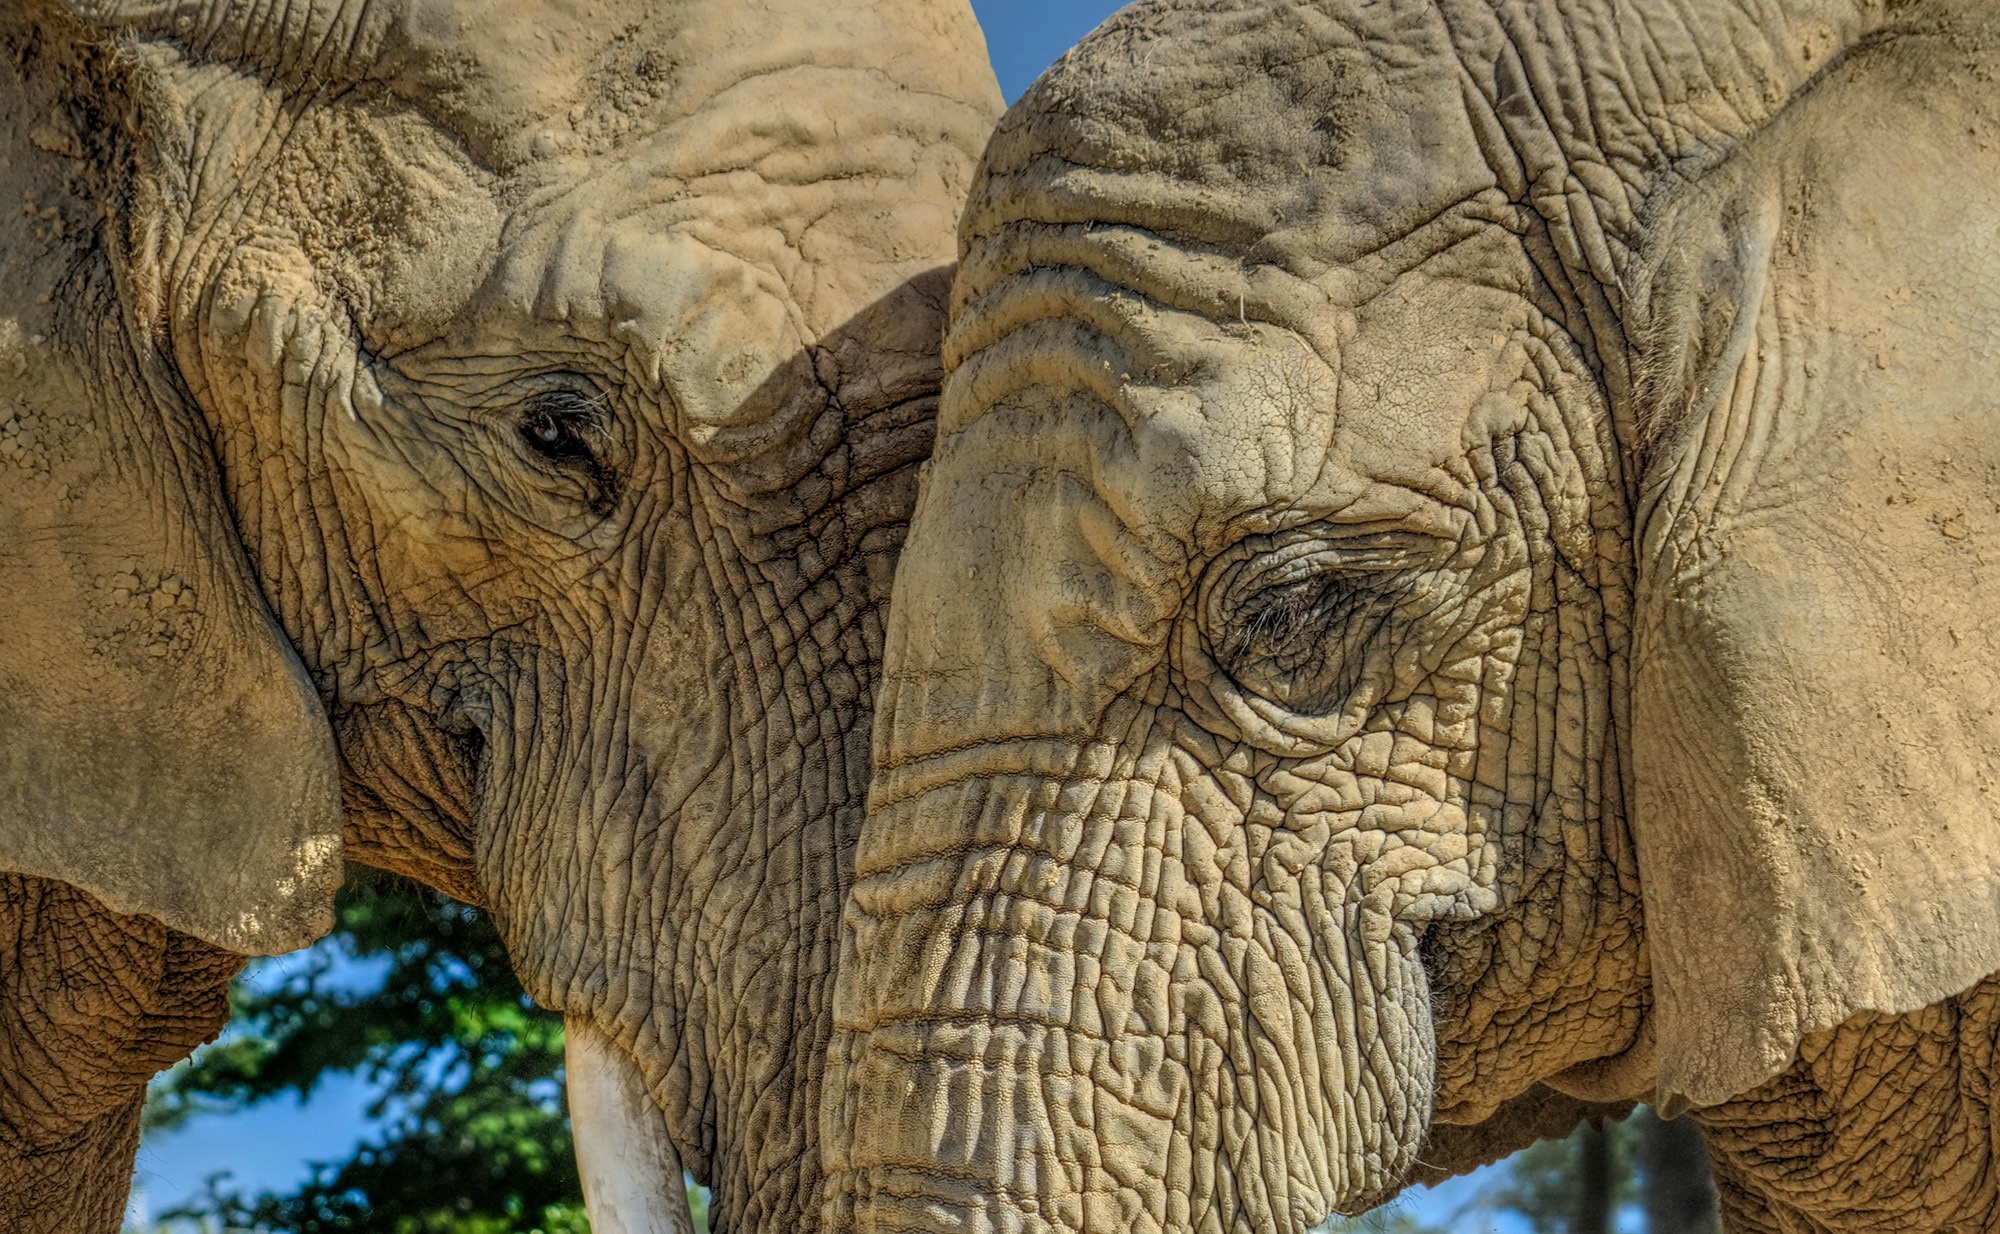 General 2000x1234 elephant mammals animals closeup